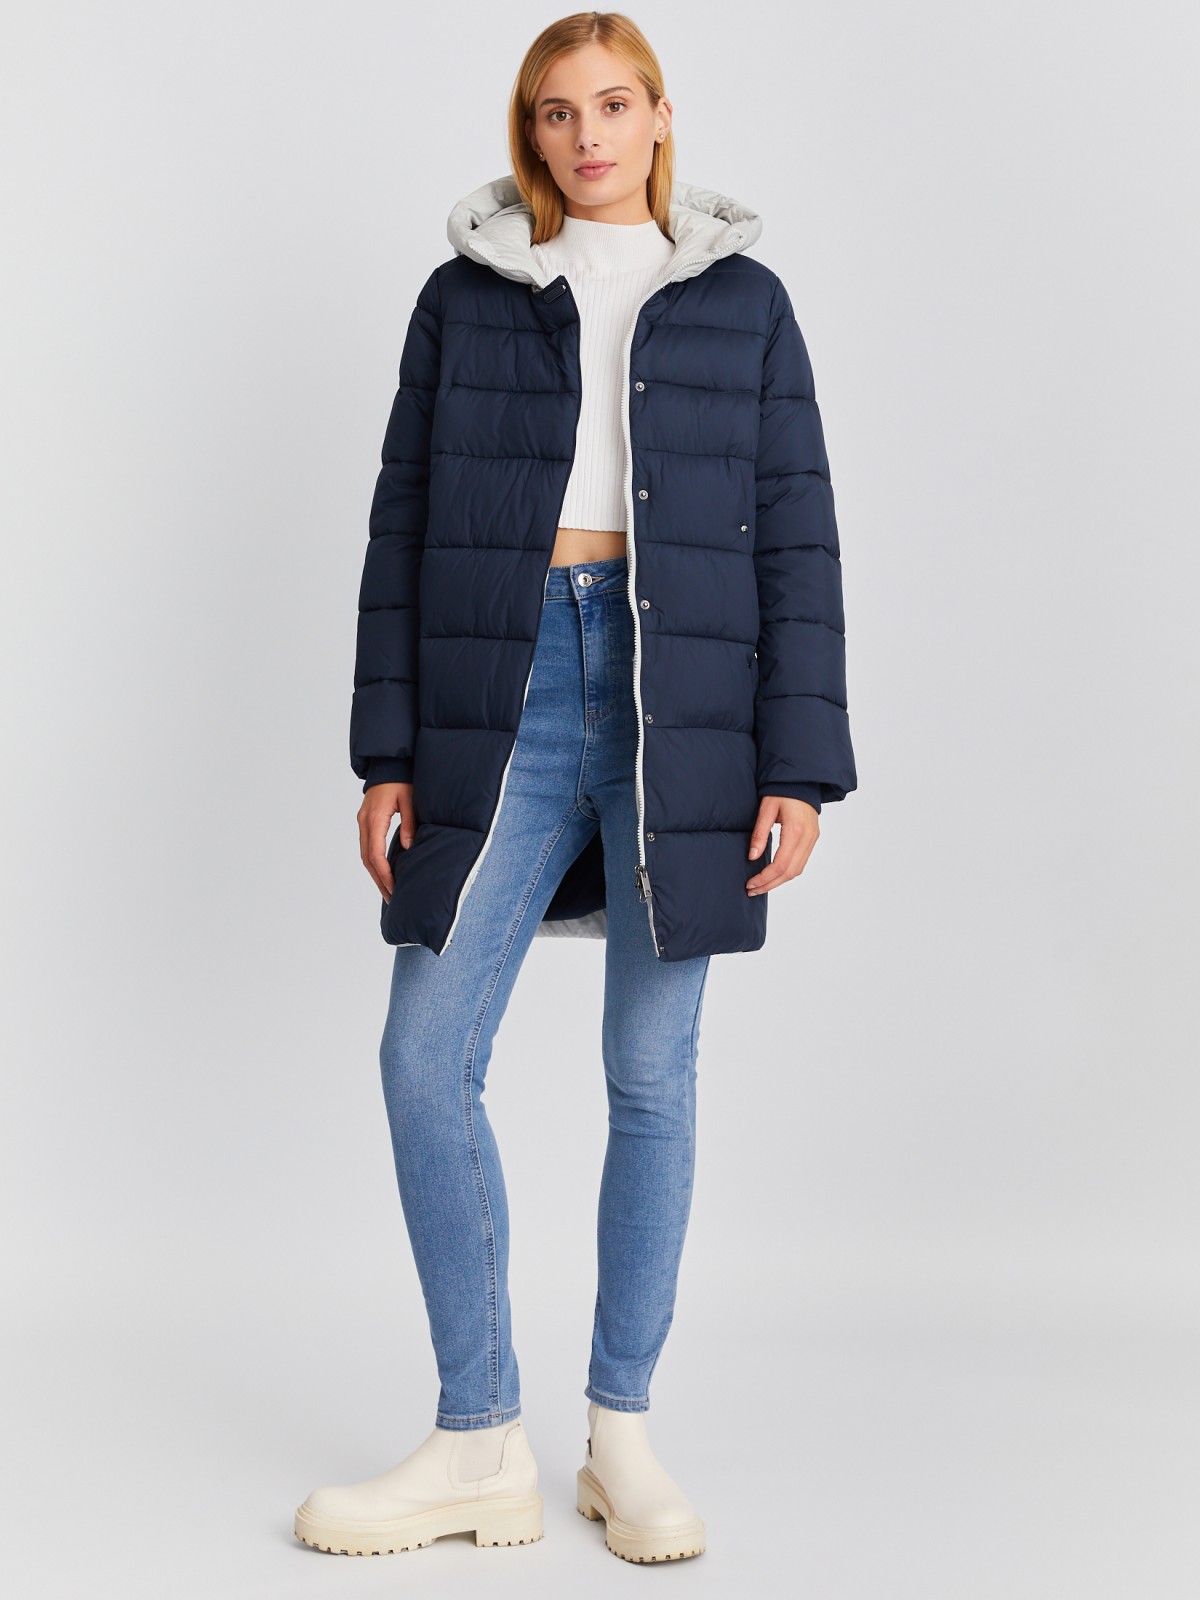 Тёплая стёганая куртка-пальто на молнии с акцентным капюшоном zolla 023345212024, цвет синий, размер S - фото 2